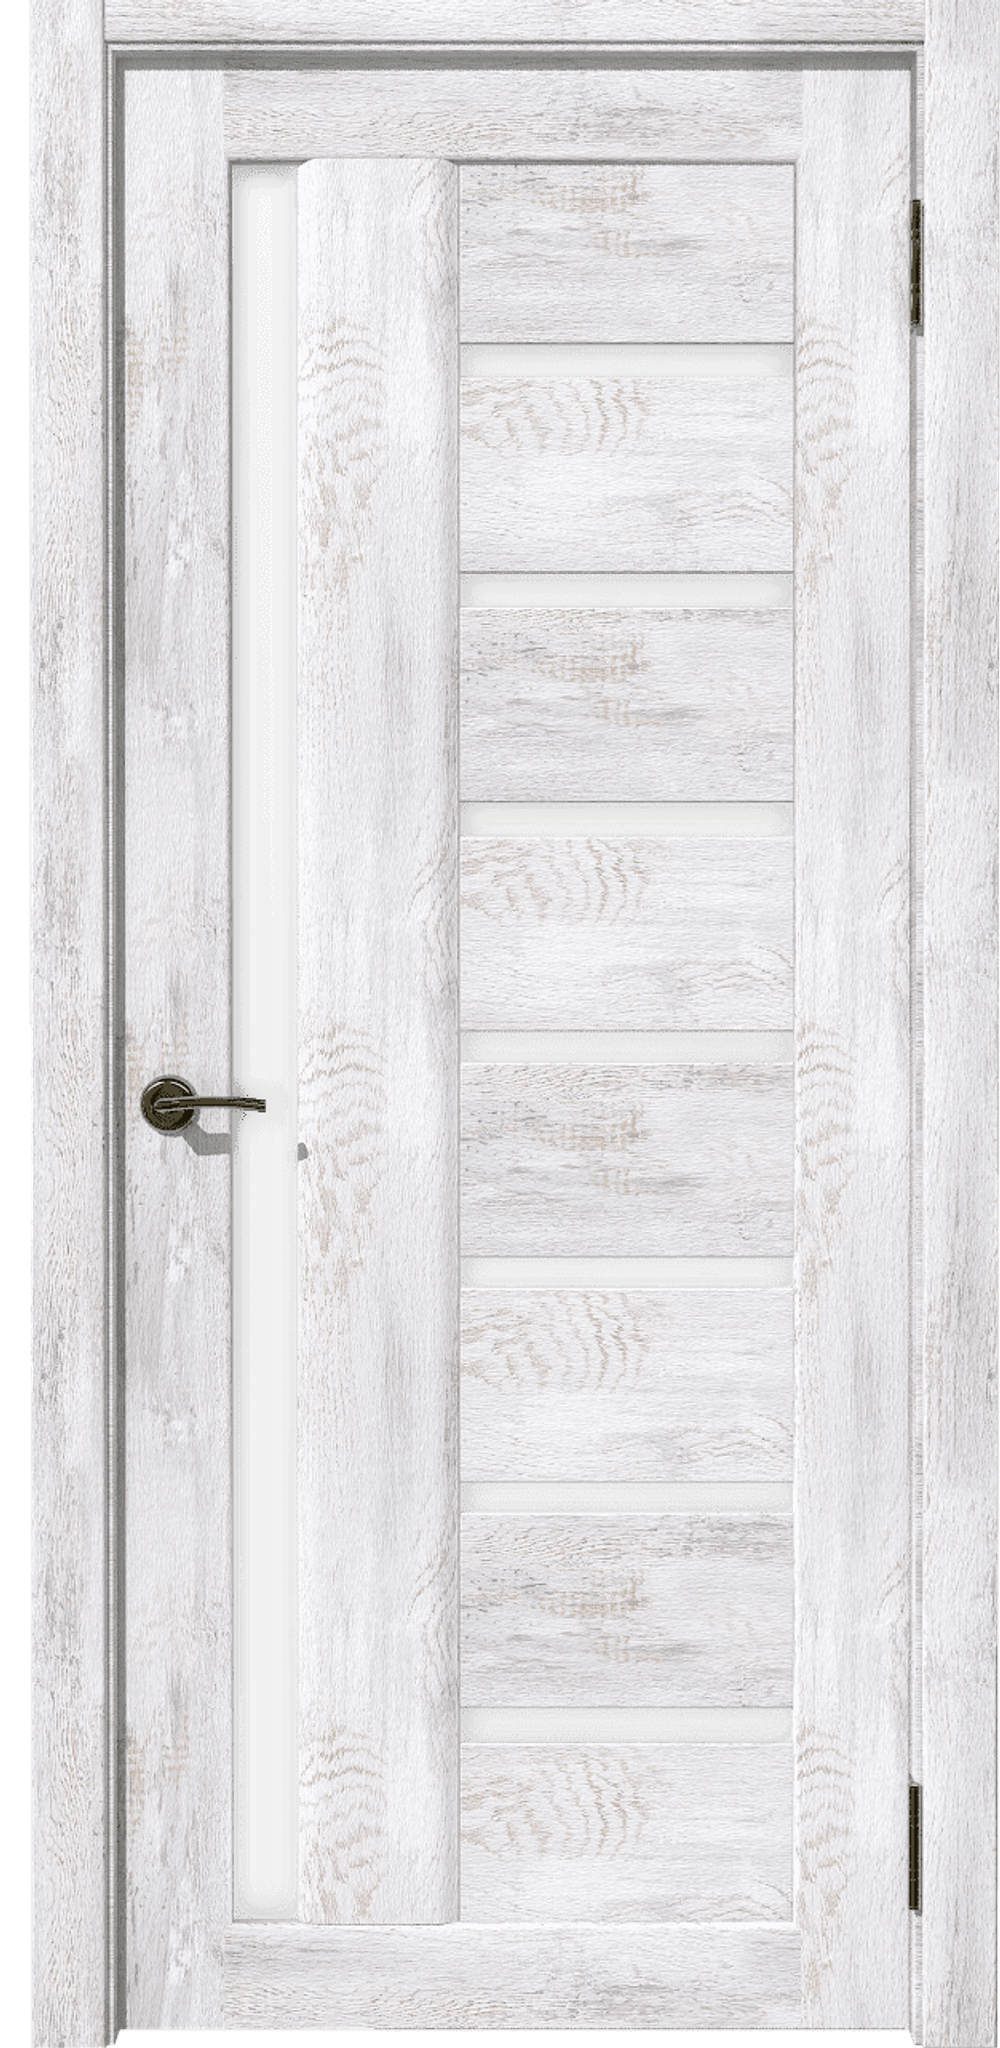 Дверь межкомнатная Рада В Ель Альпийская остекленное полотно